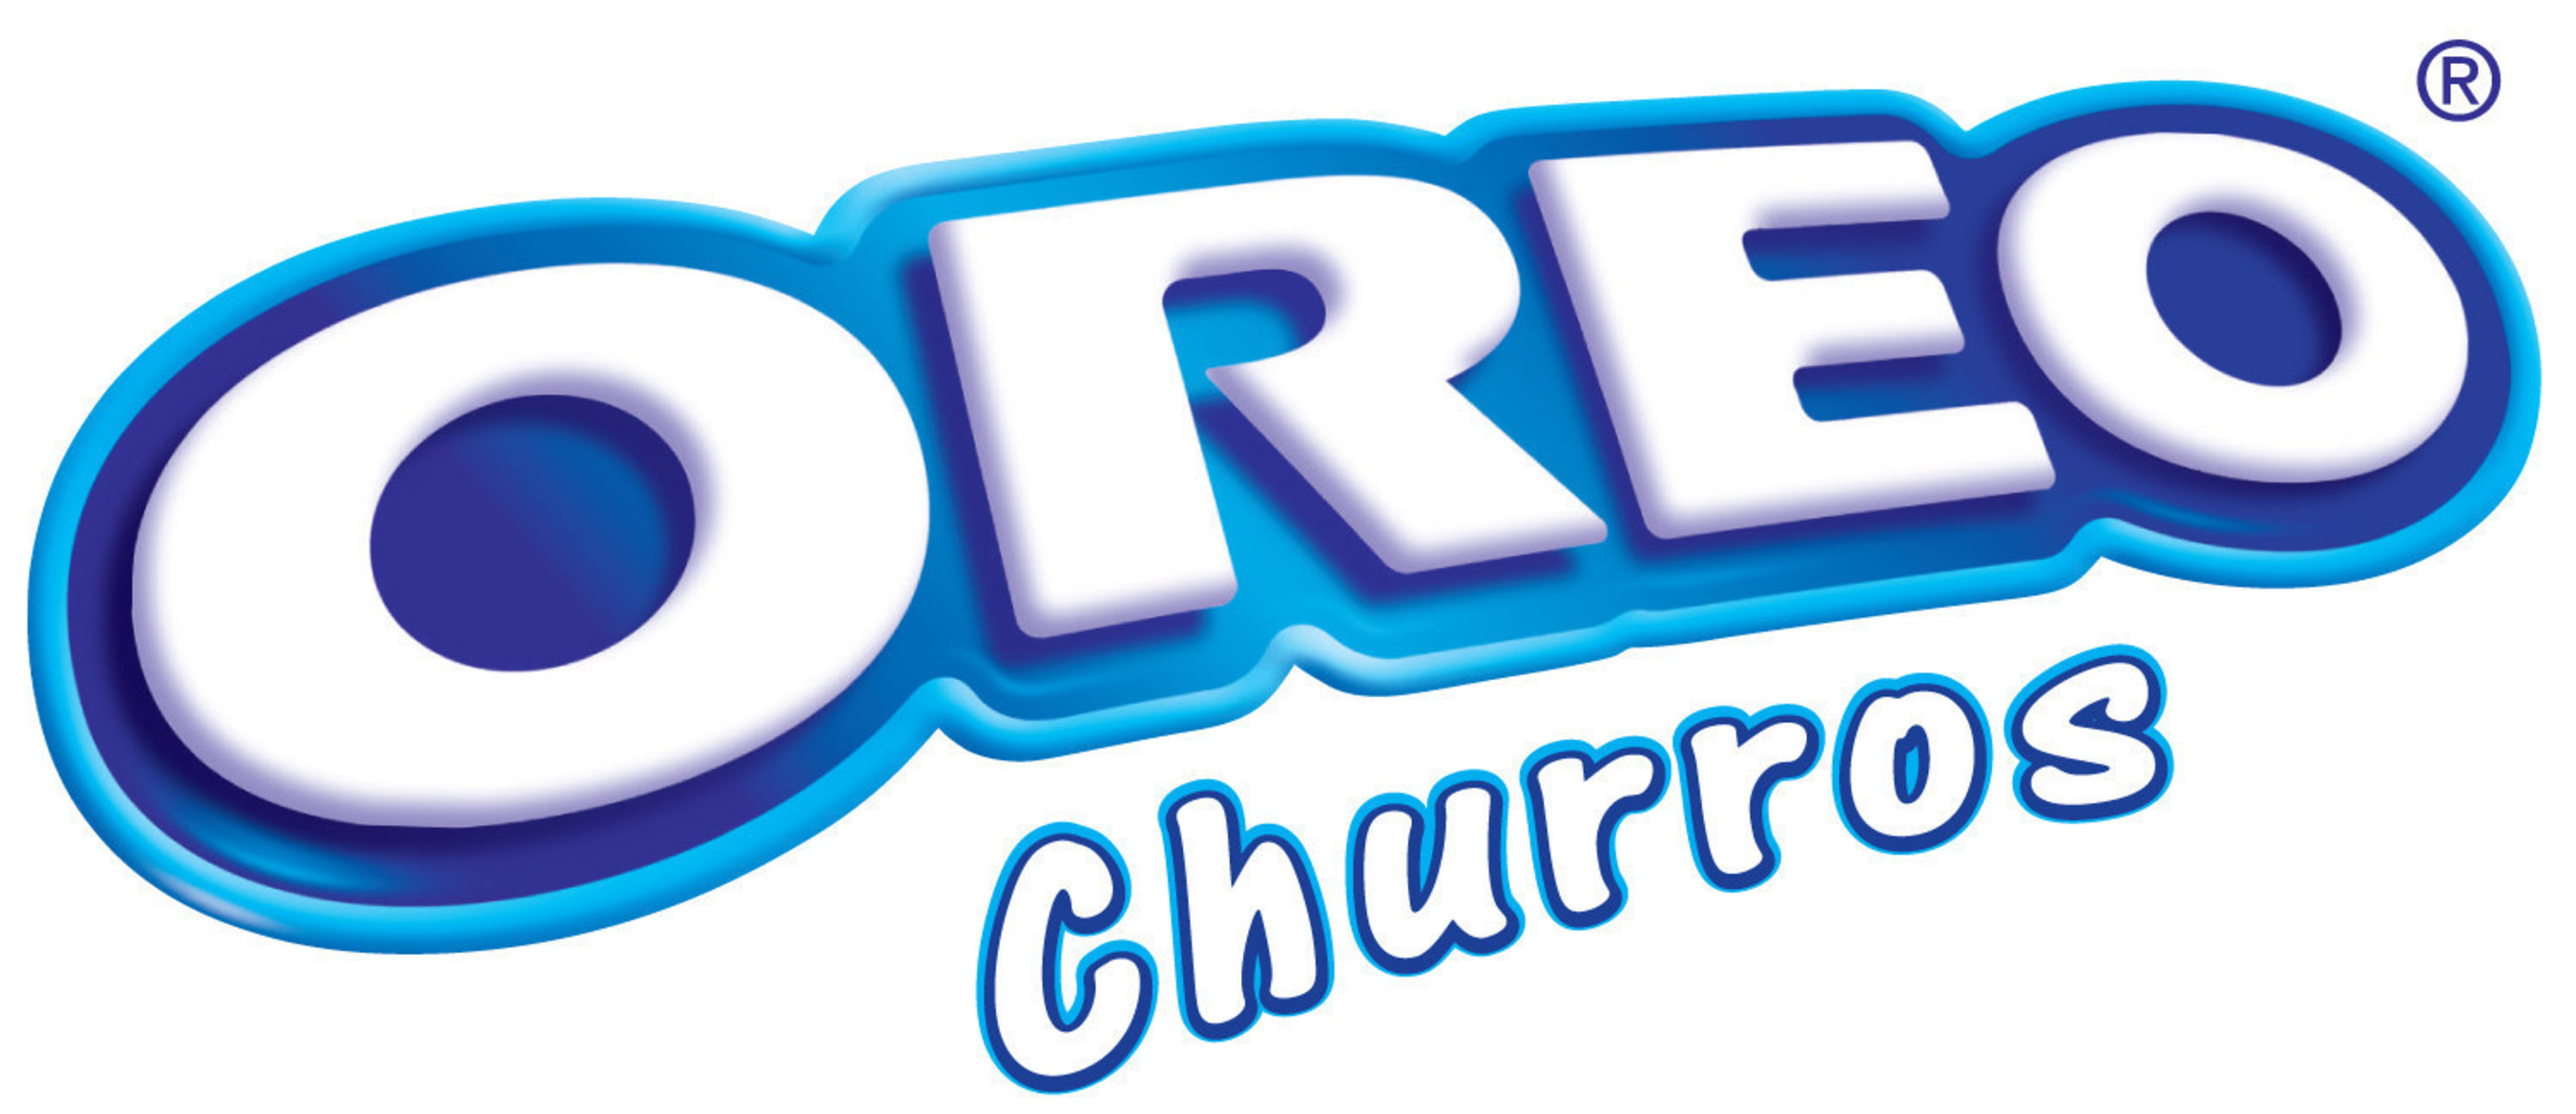 OREO Churros Logo